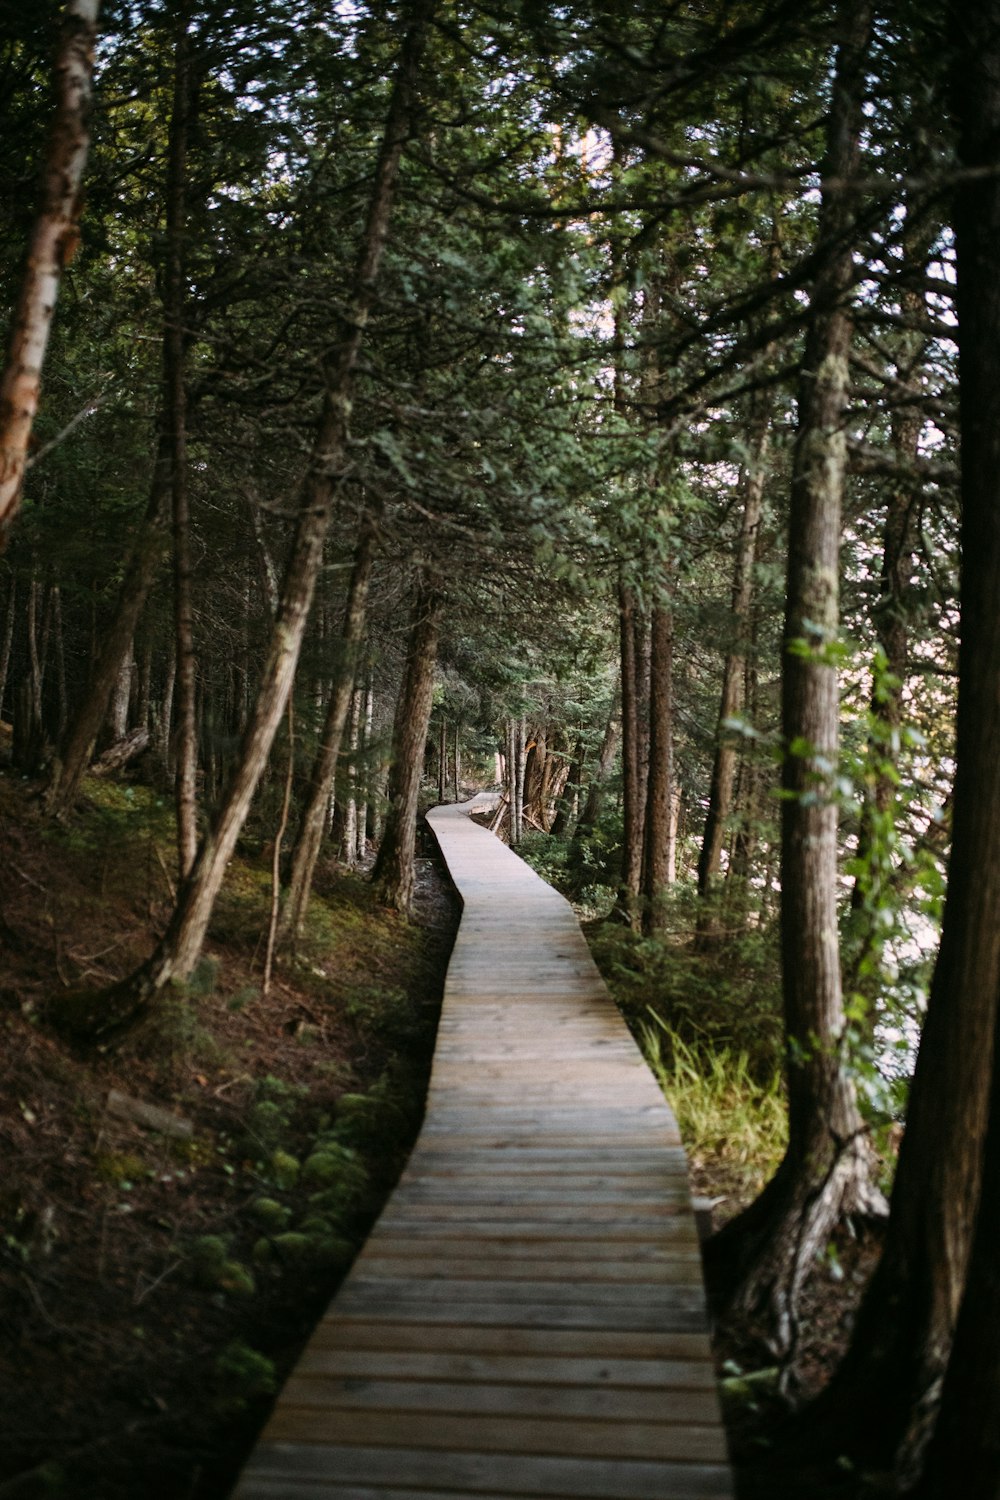 caminho de madeira marrom na floresta